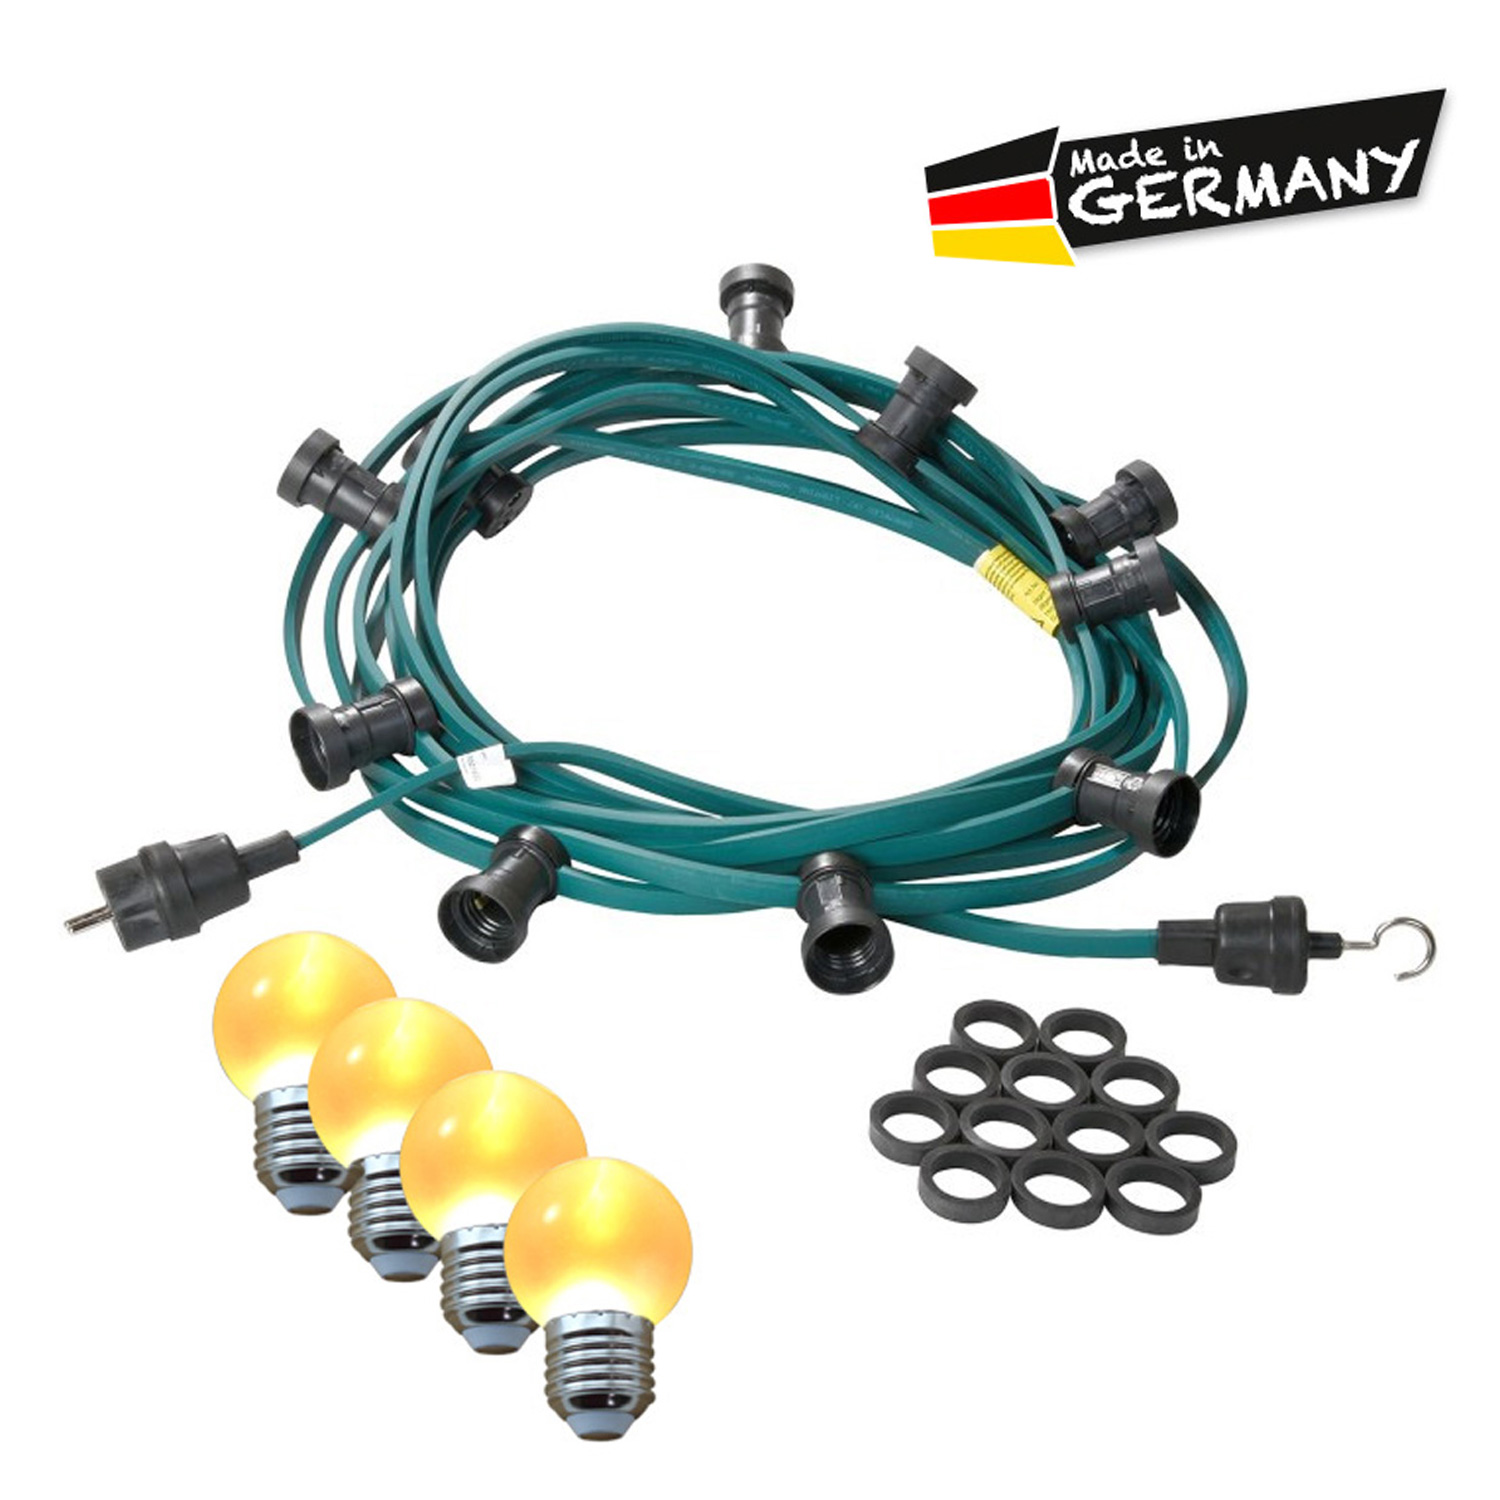 Illu-/Partylichterkette 5m | Außenlichterkette | Made in Germany | 10 x ultra-warmweisse LED Kugeln